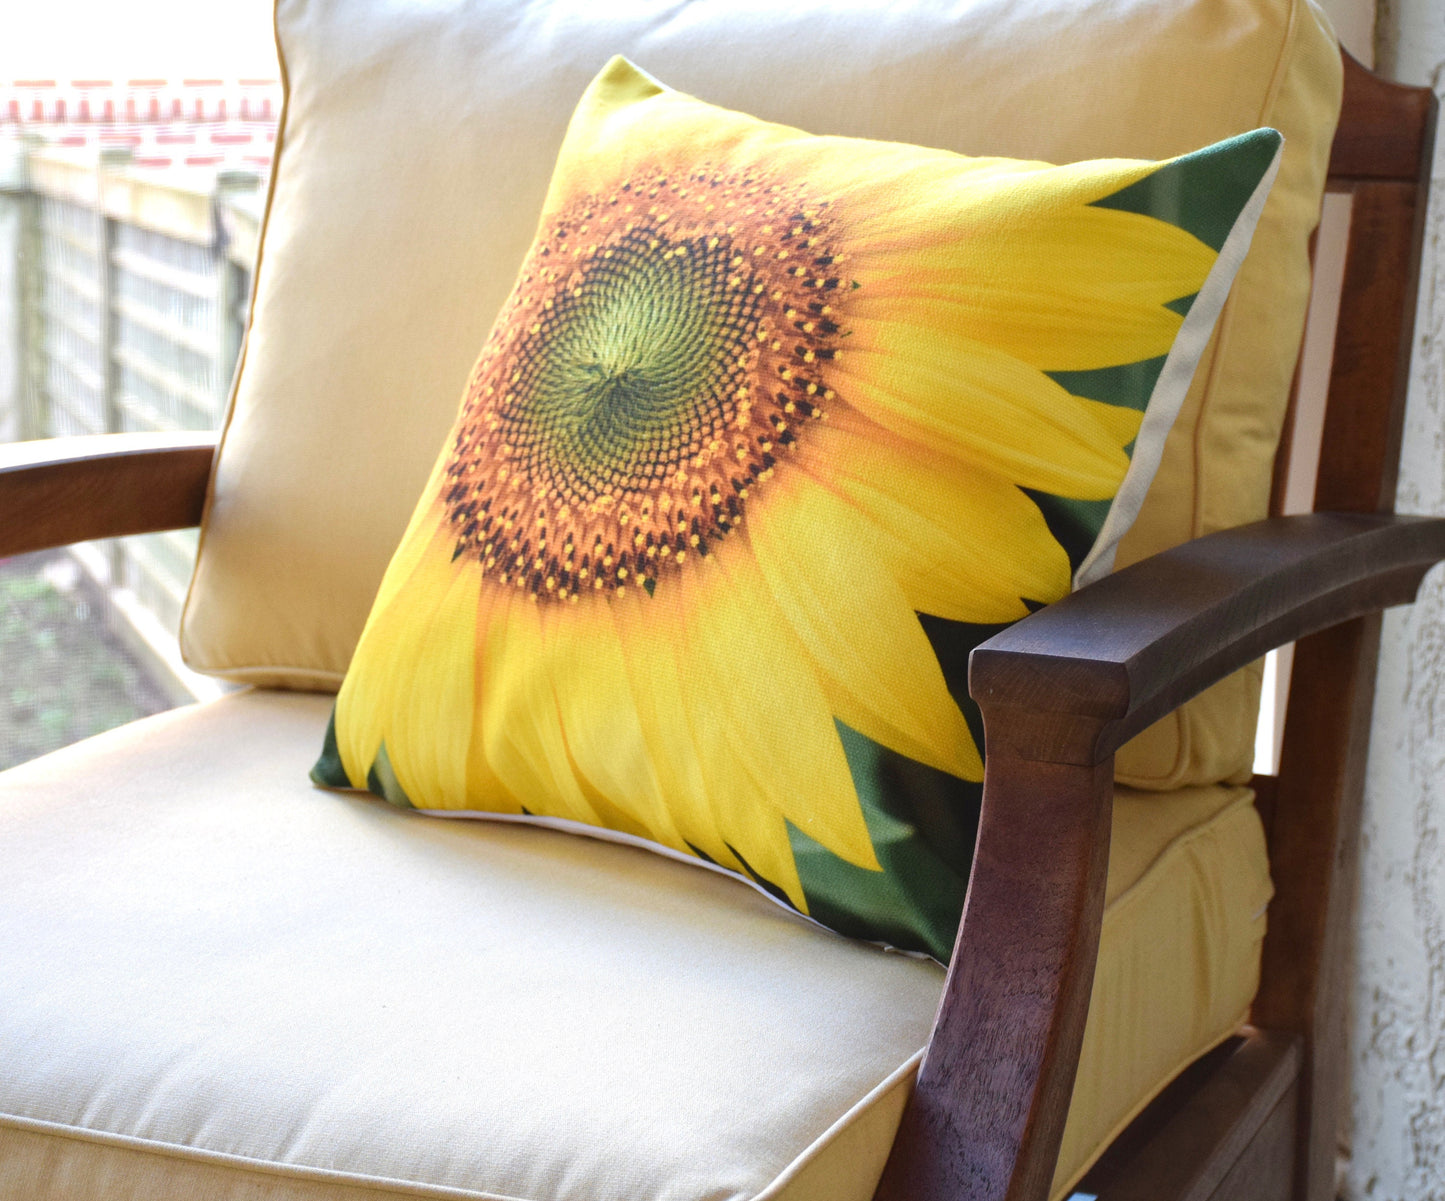 Sunflower Pillow - Sunflower Summer Decor Pillow